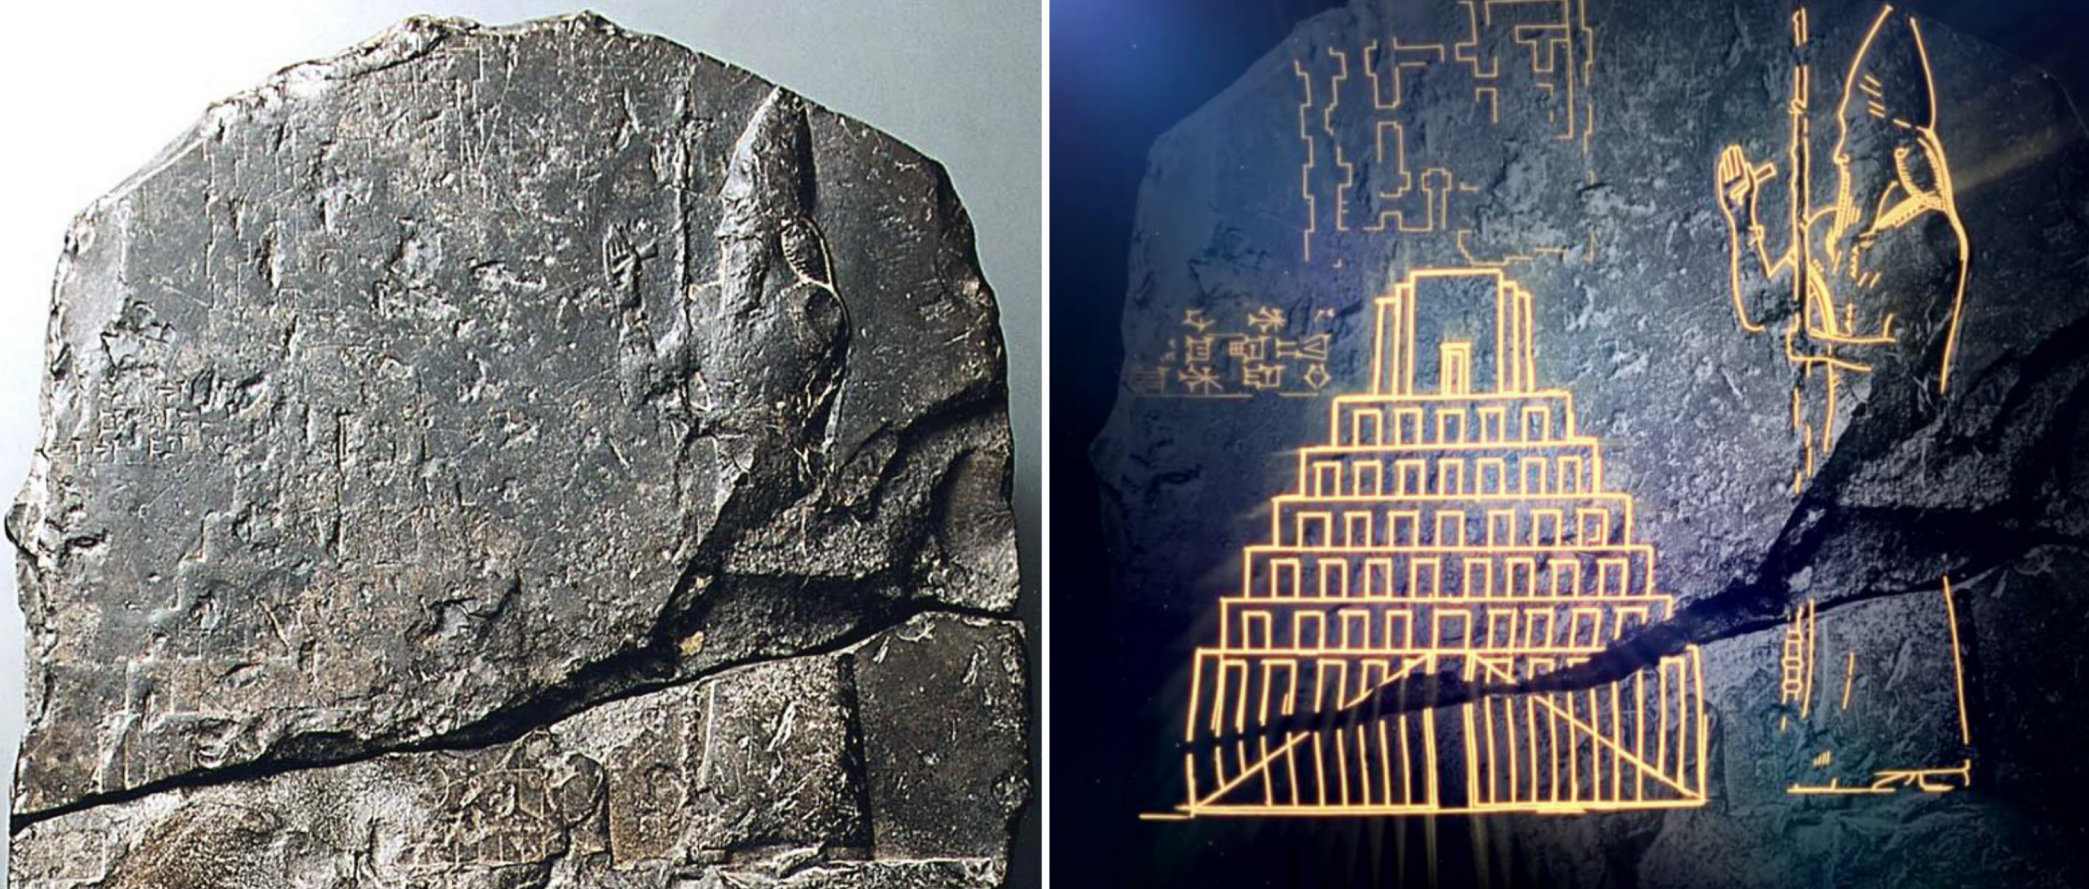 První důkaz o objevení biblické babylonské věže 3